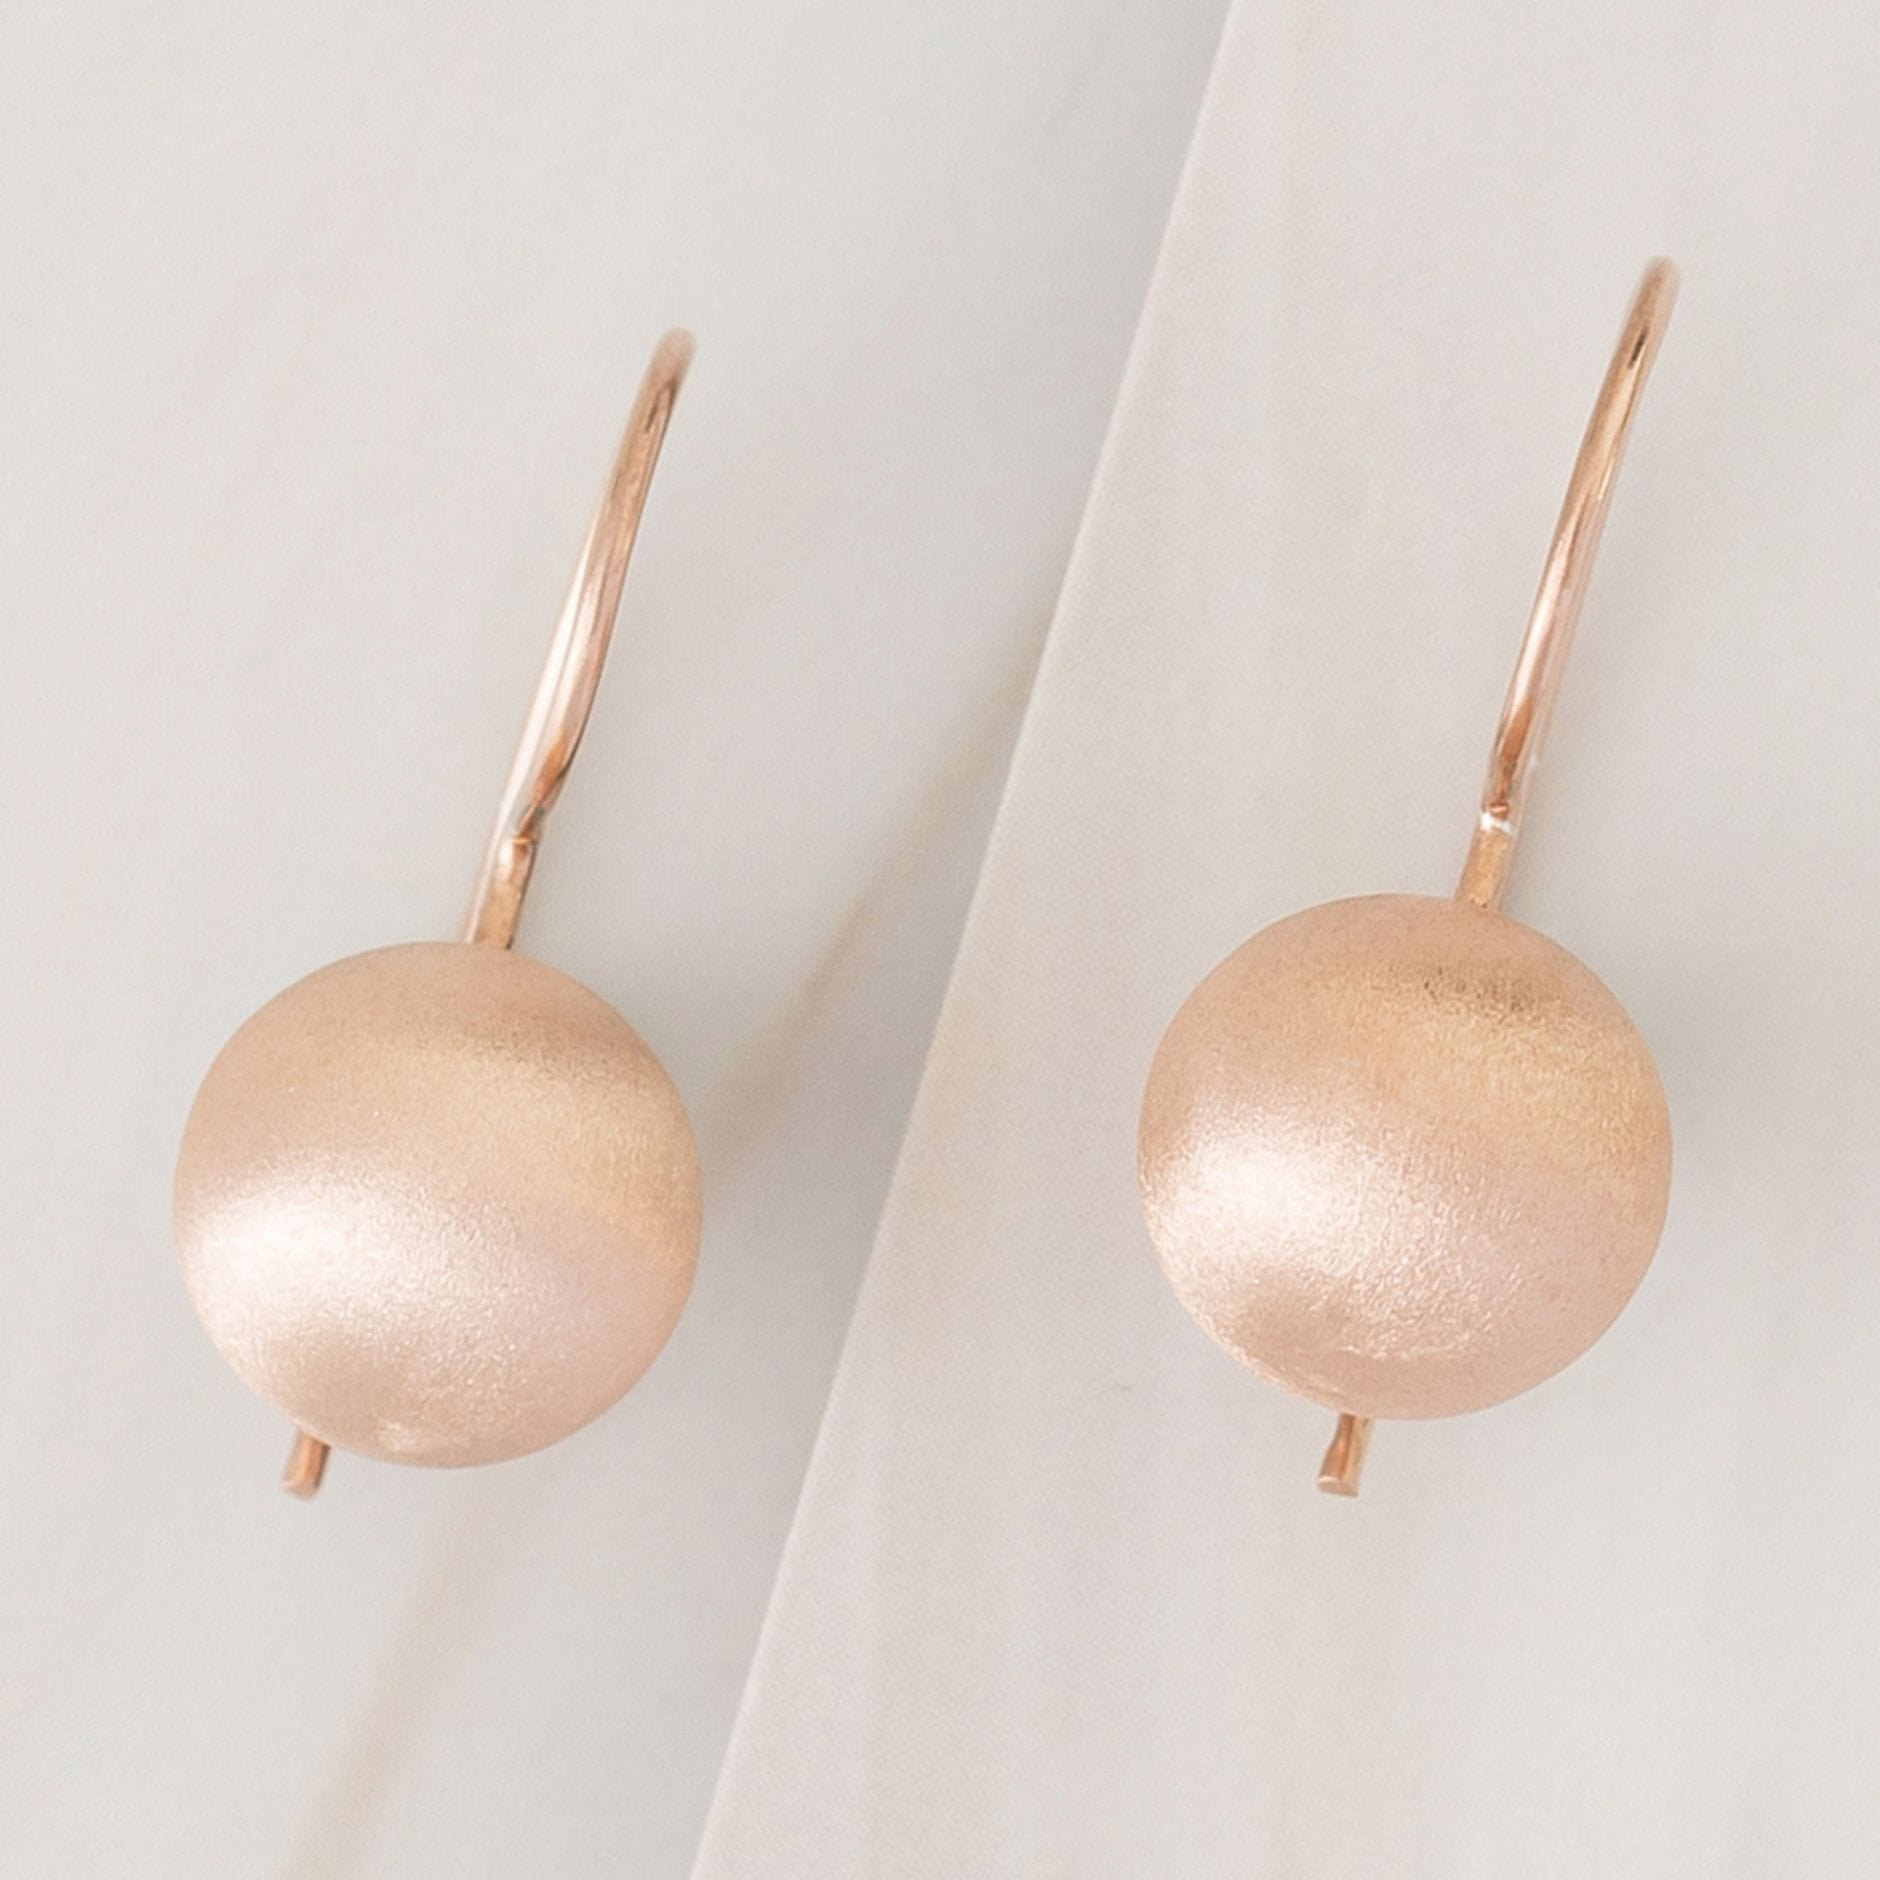 Emblem Jewelry Earrings Rose Gold Tone / 10 mm Terrene Matte Ball Drop Earrings